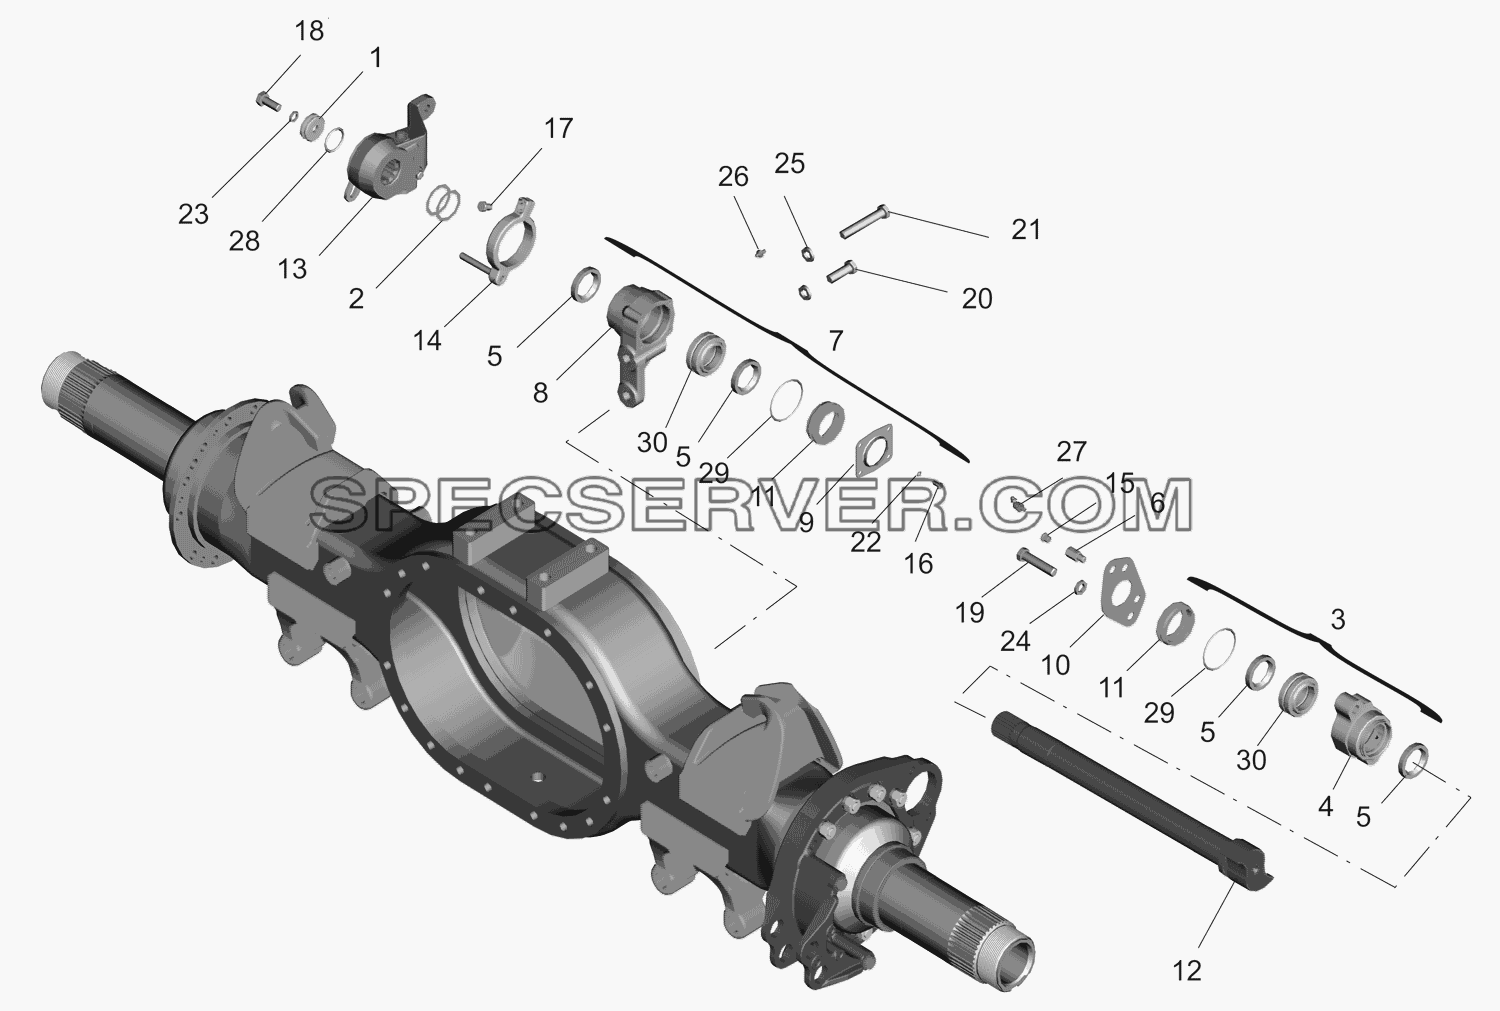 Привод тормозного механизма задних колес и средних колес для МАЗ-630333 (список запасных частей)